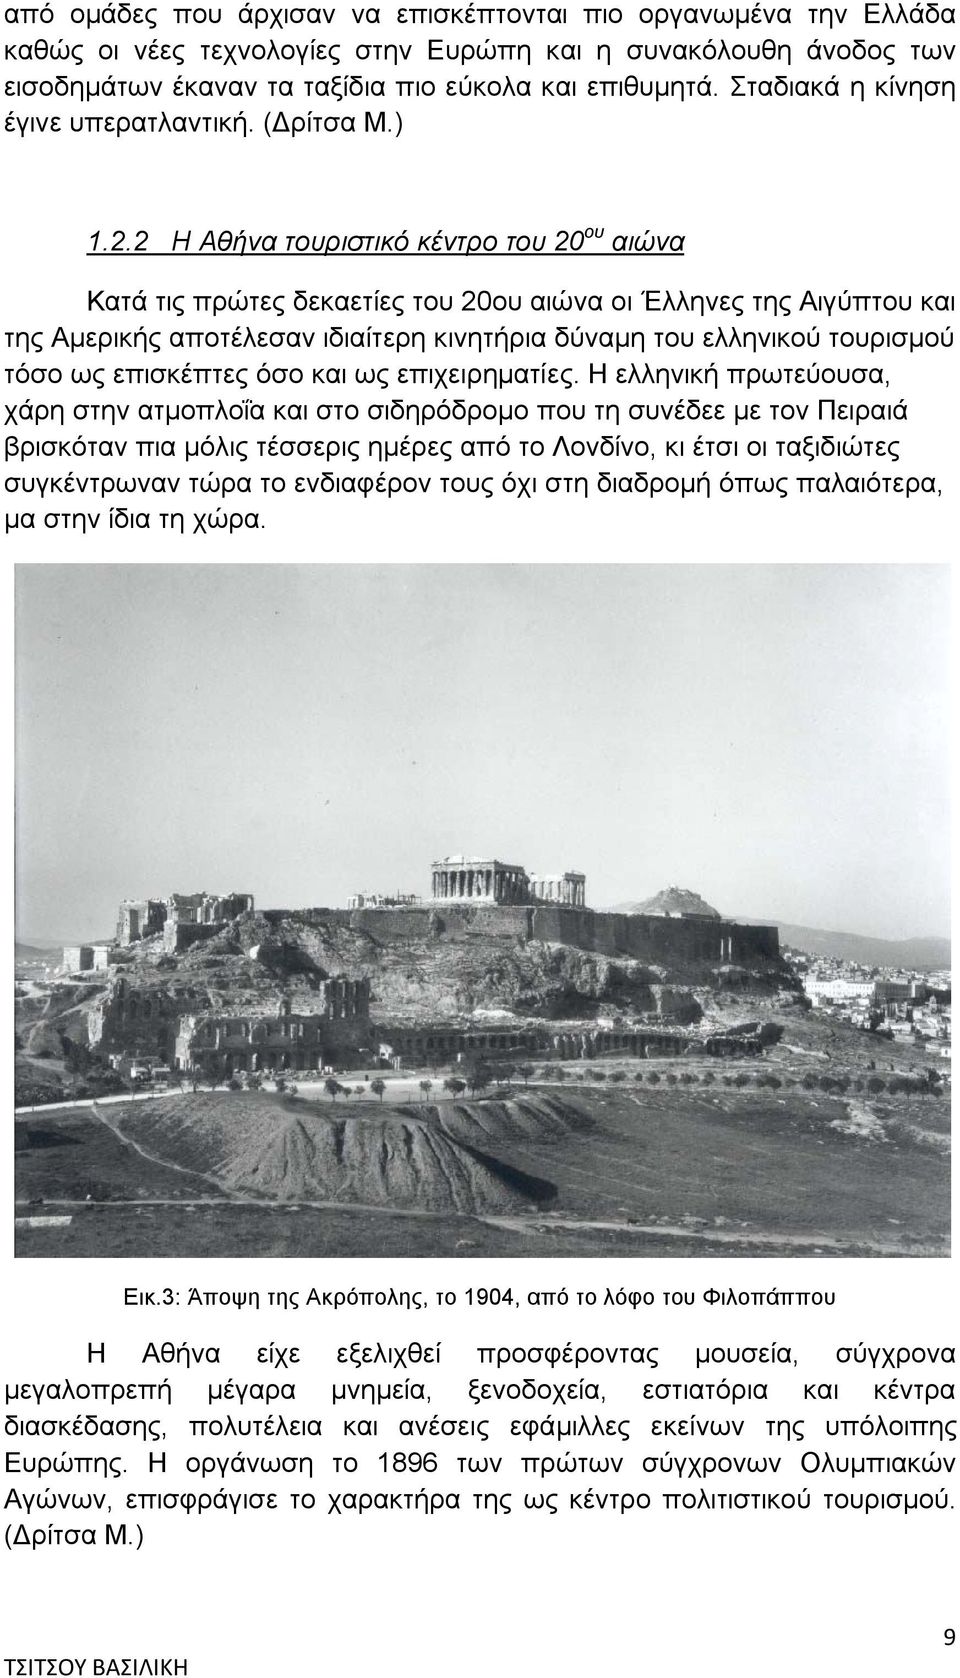 2 Η Αθήνα τουριστικό κέντρο του 20 ου αιώνα Κατά τις πρώτες δεκαετίες του 20ου αιώνα οι Έλληνες της Αιγύπτου και της Αμερικής αποτέλεσαν ιδιαίτερη κινητήρια δύναμη του ελληνικού τουρισμού τόσο ως